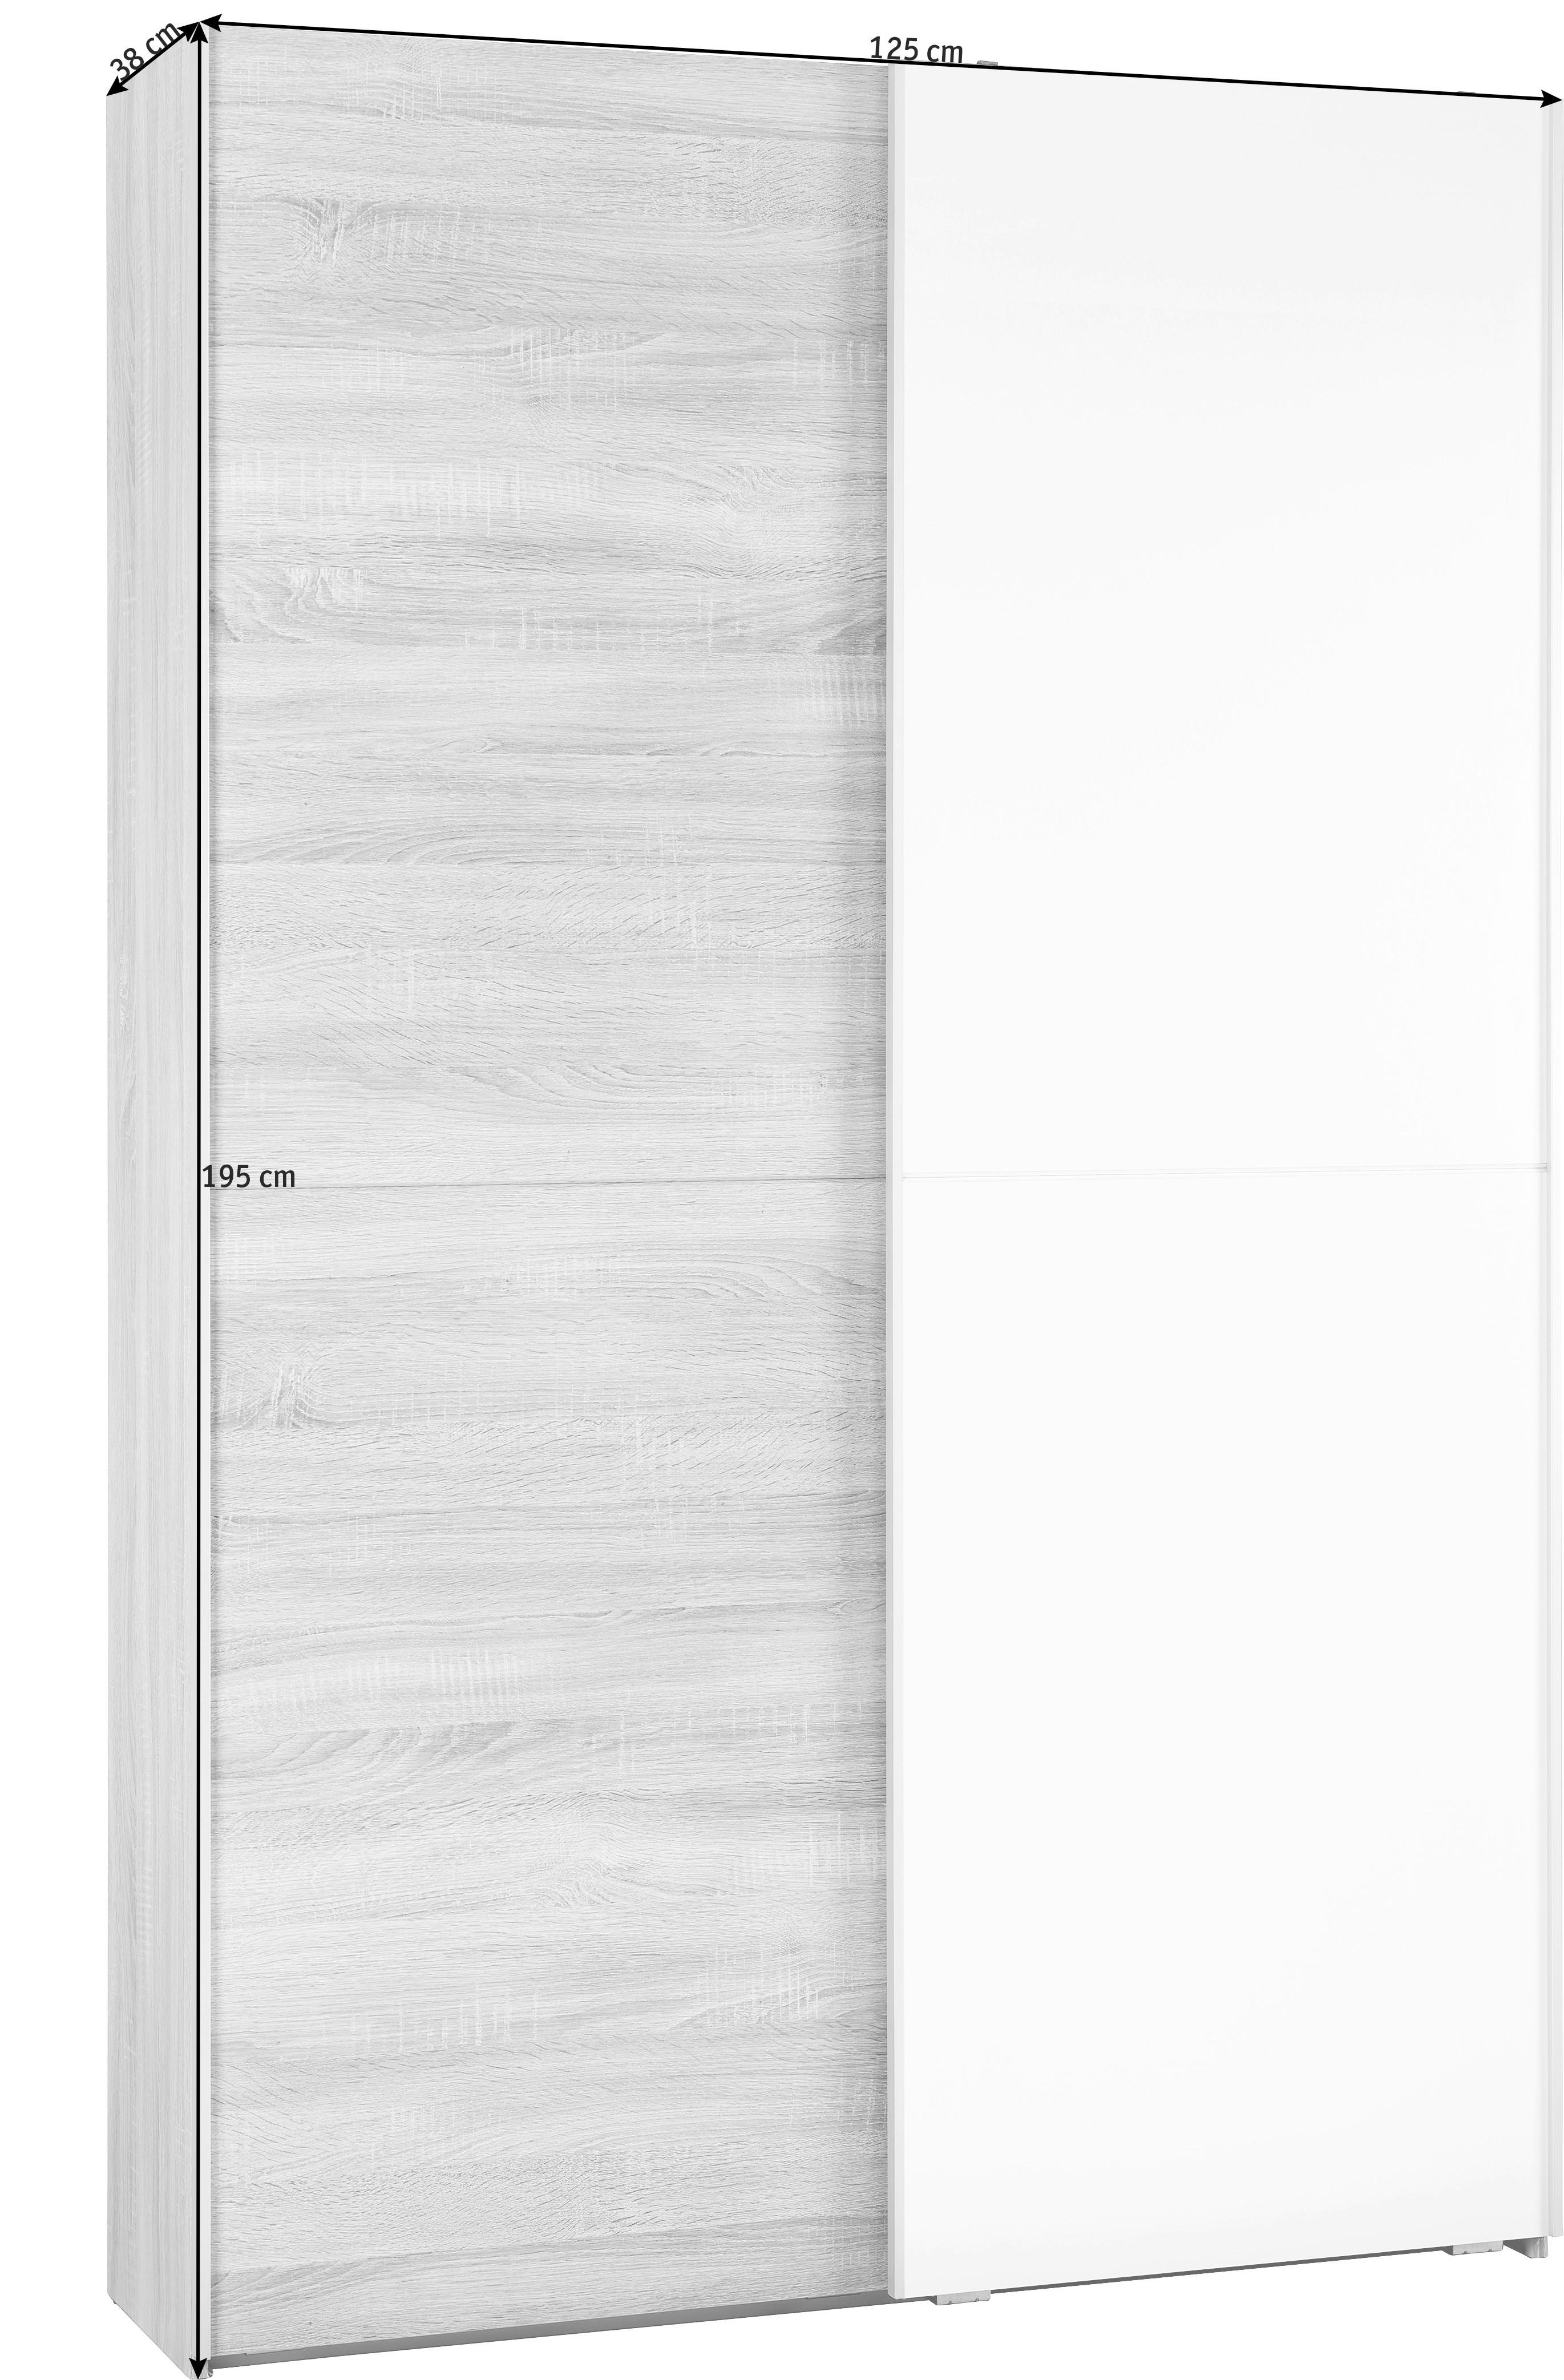 SCHWEBETÜRENSCHRANK 2-türig Weiß, Sonoma Eiche  - Alufarben/Weiß, KONVENTIONELL, Holzwerkstoff (125/195/38cm) - Livetastic